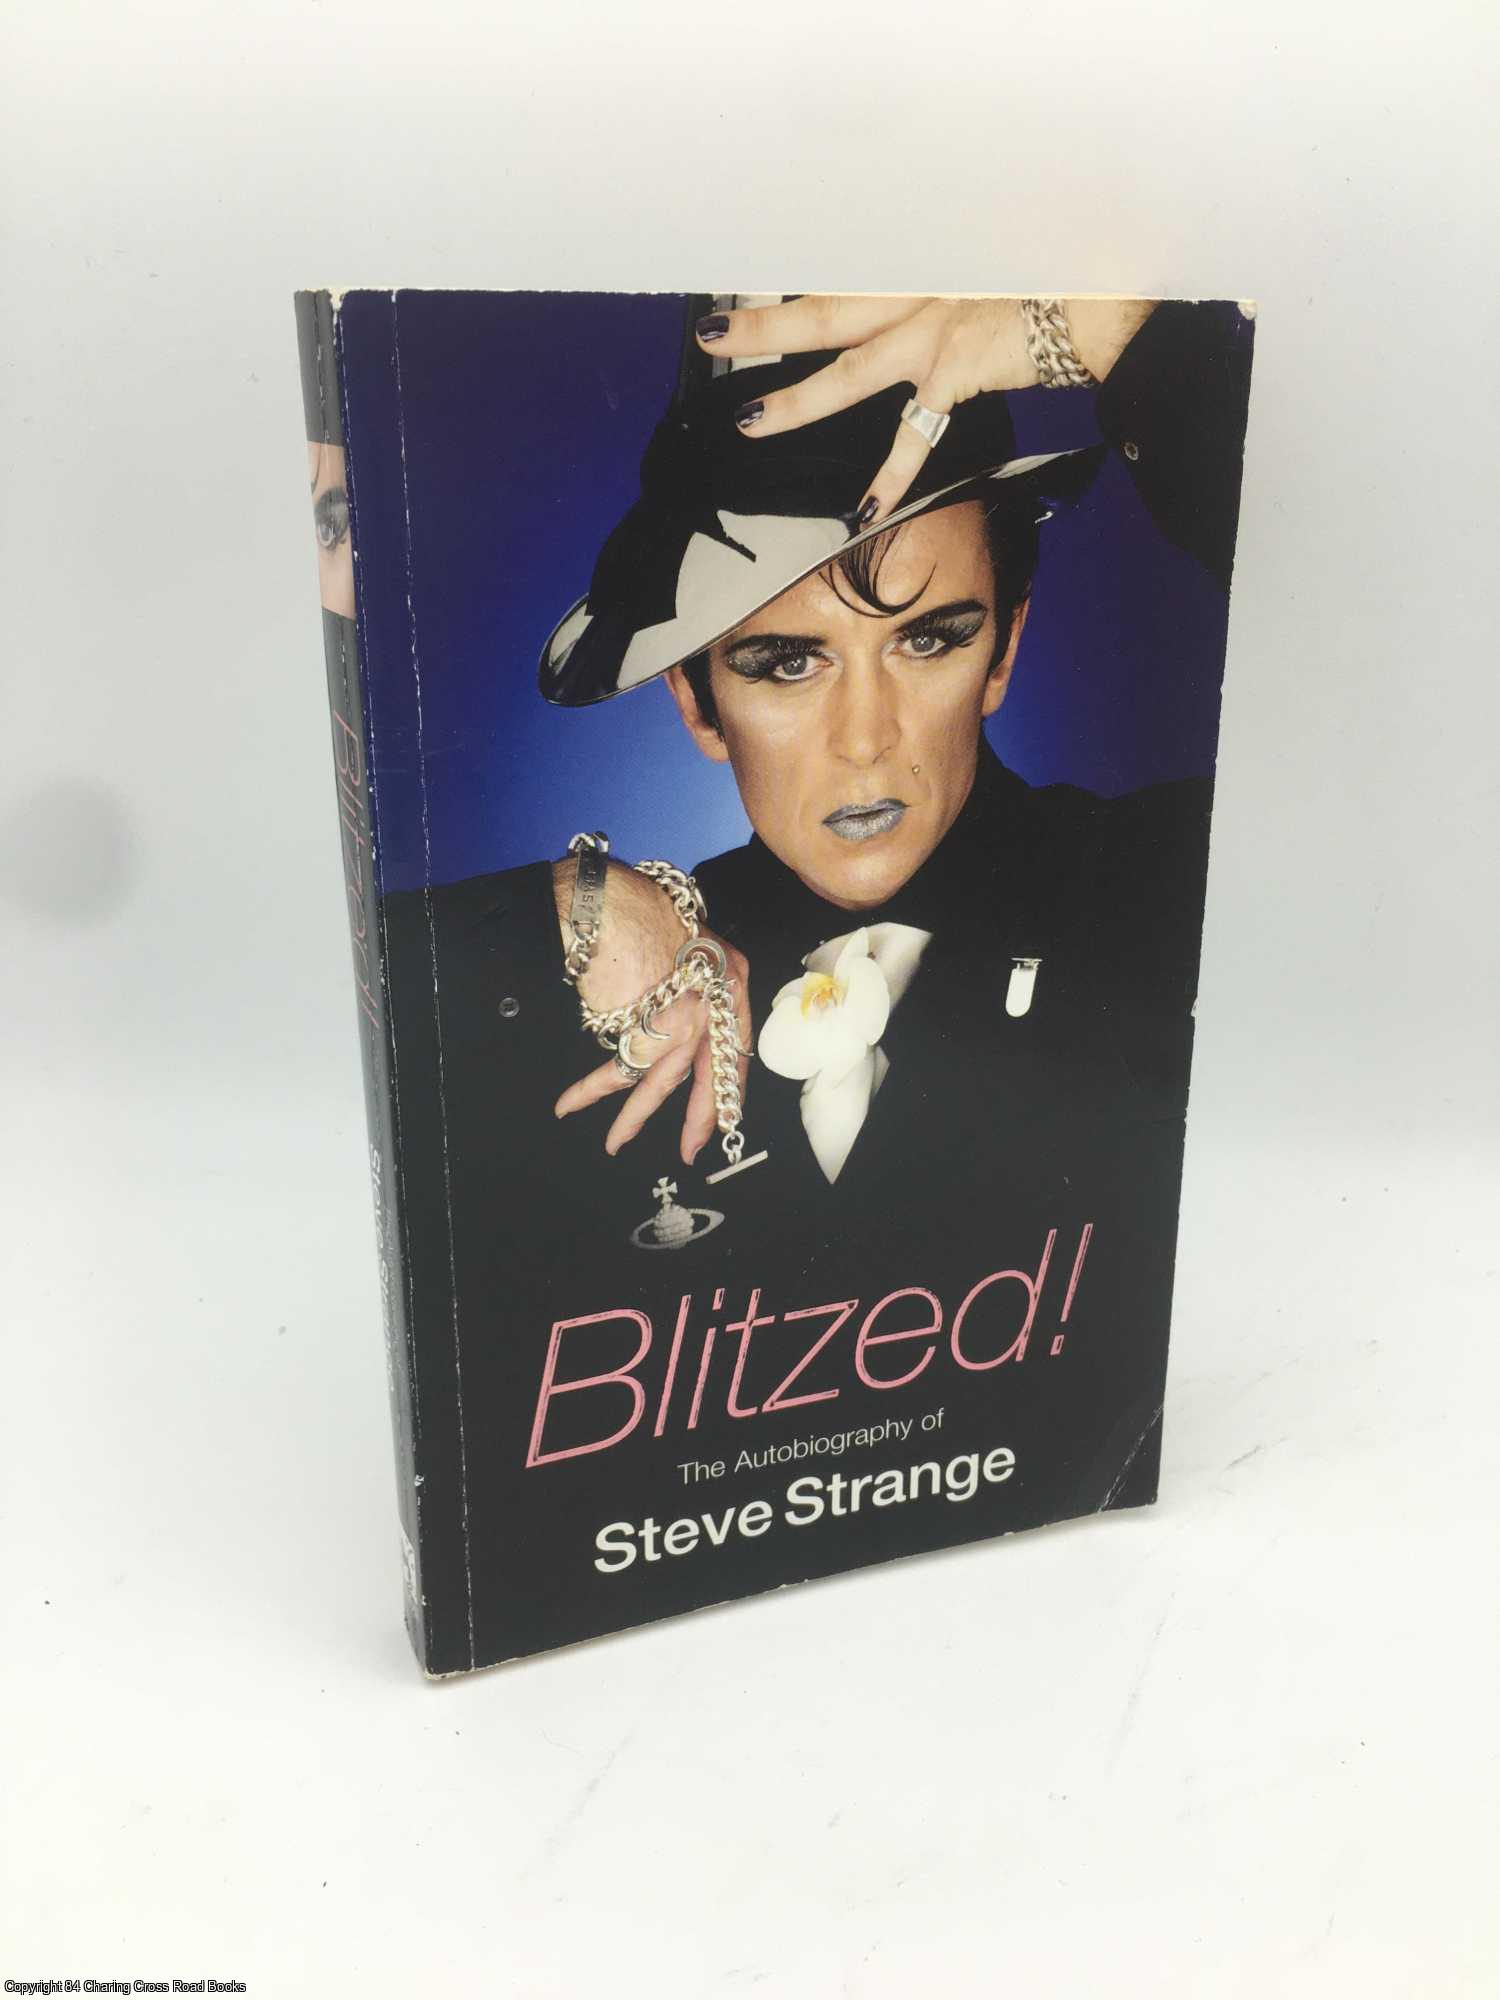 Strange, Steve - Blitzed!: The Autobiography of Steve Strange